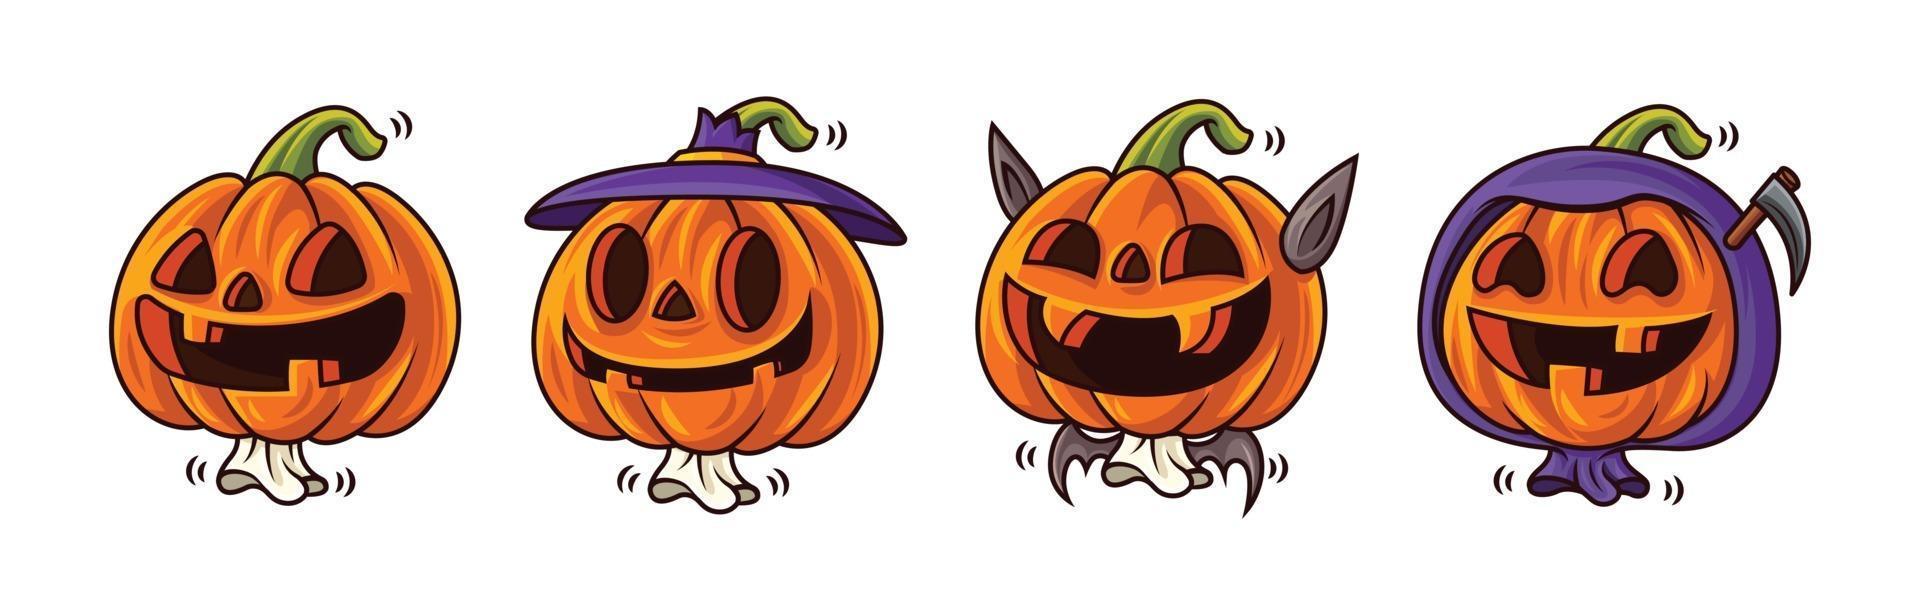 feliz Halloween. serie de dibujos animados del lindo personaje de calabaza jack o lantern con expresión de cara divertida y disfraces de halloween. juego de mascota. vector